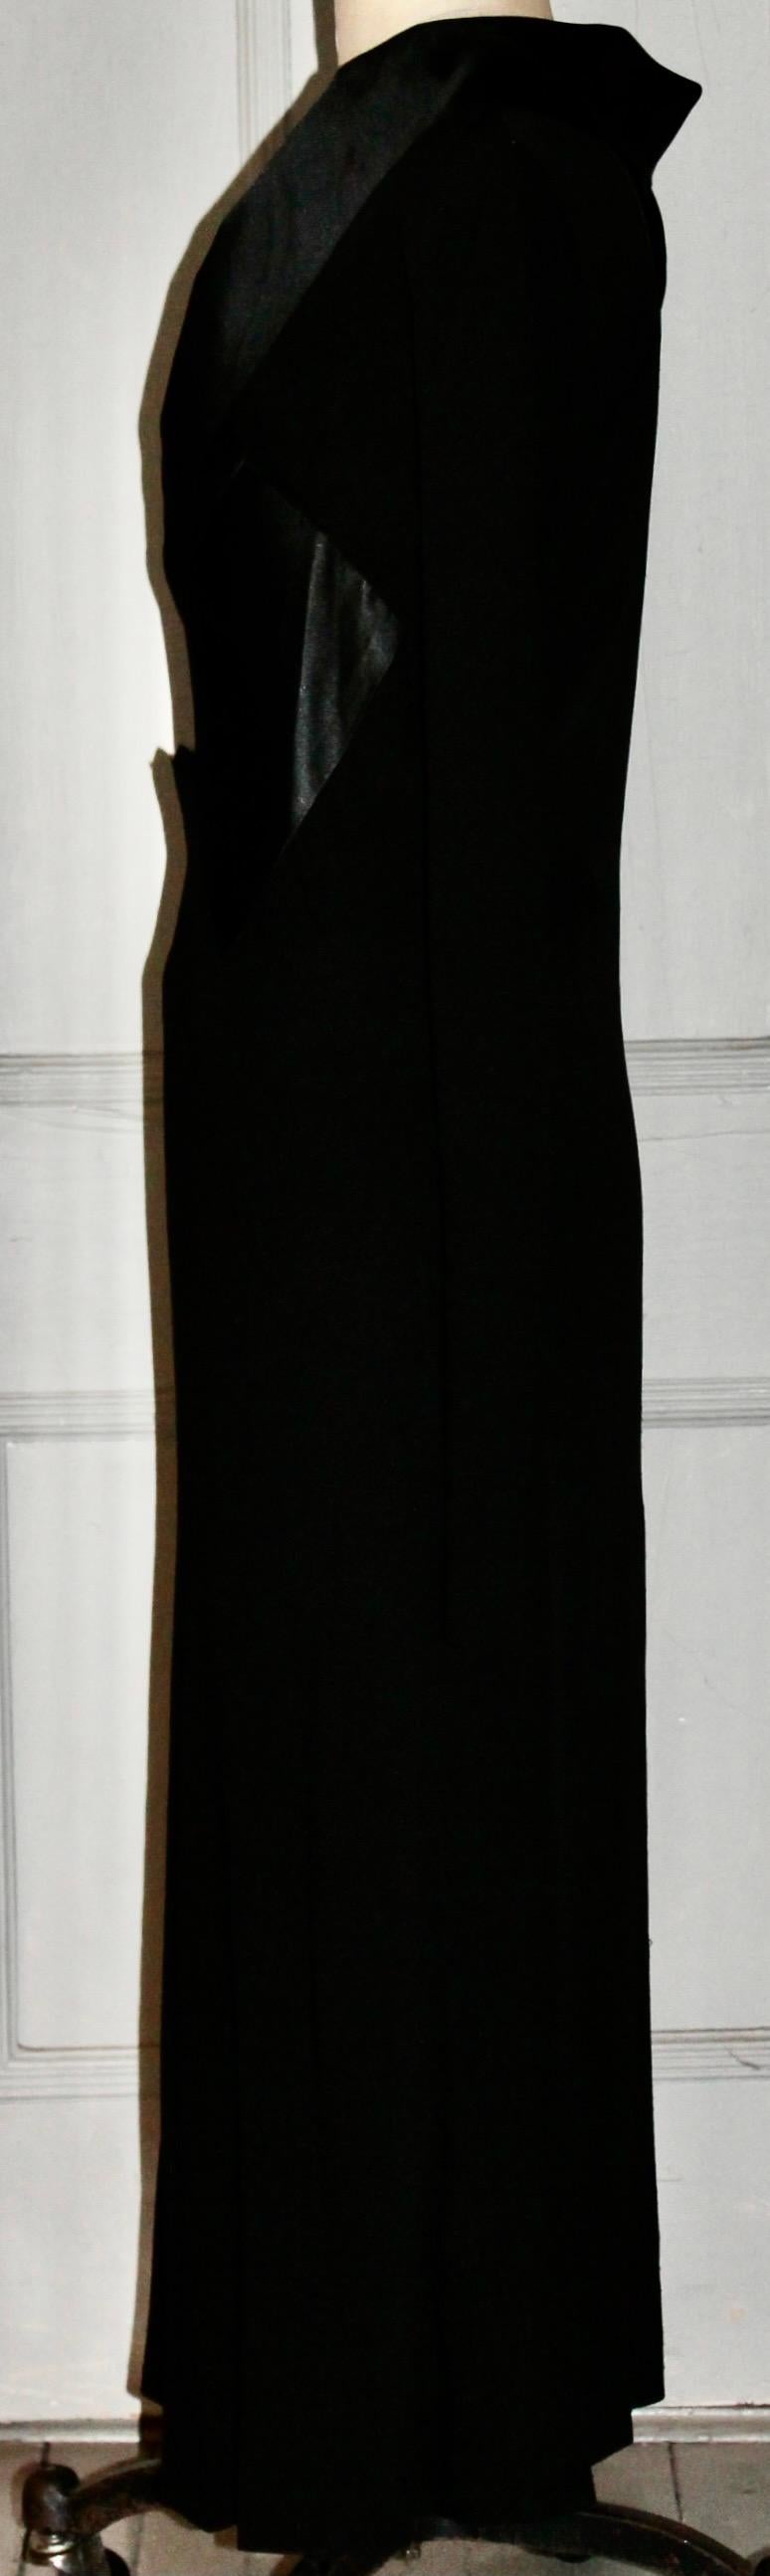 France Vramant Black Crepe Silk Evening Gown, 1930's Paris  For Sale 4